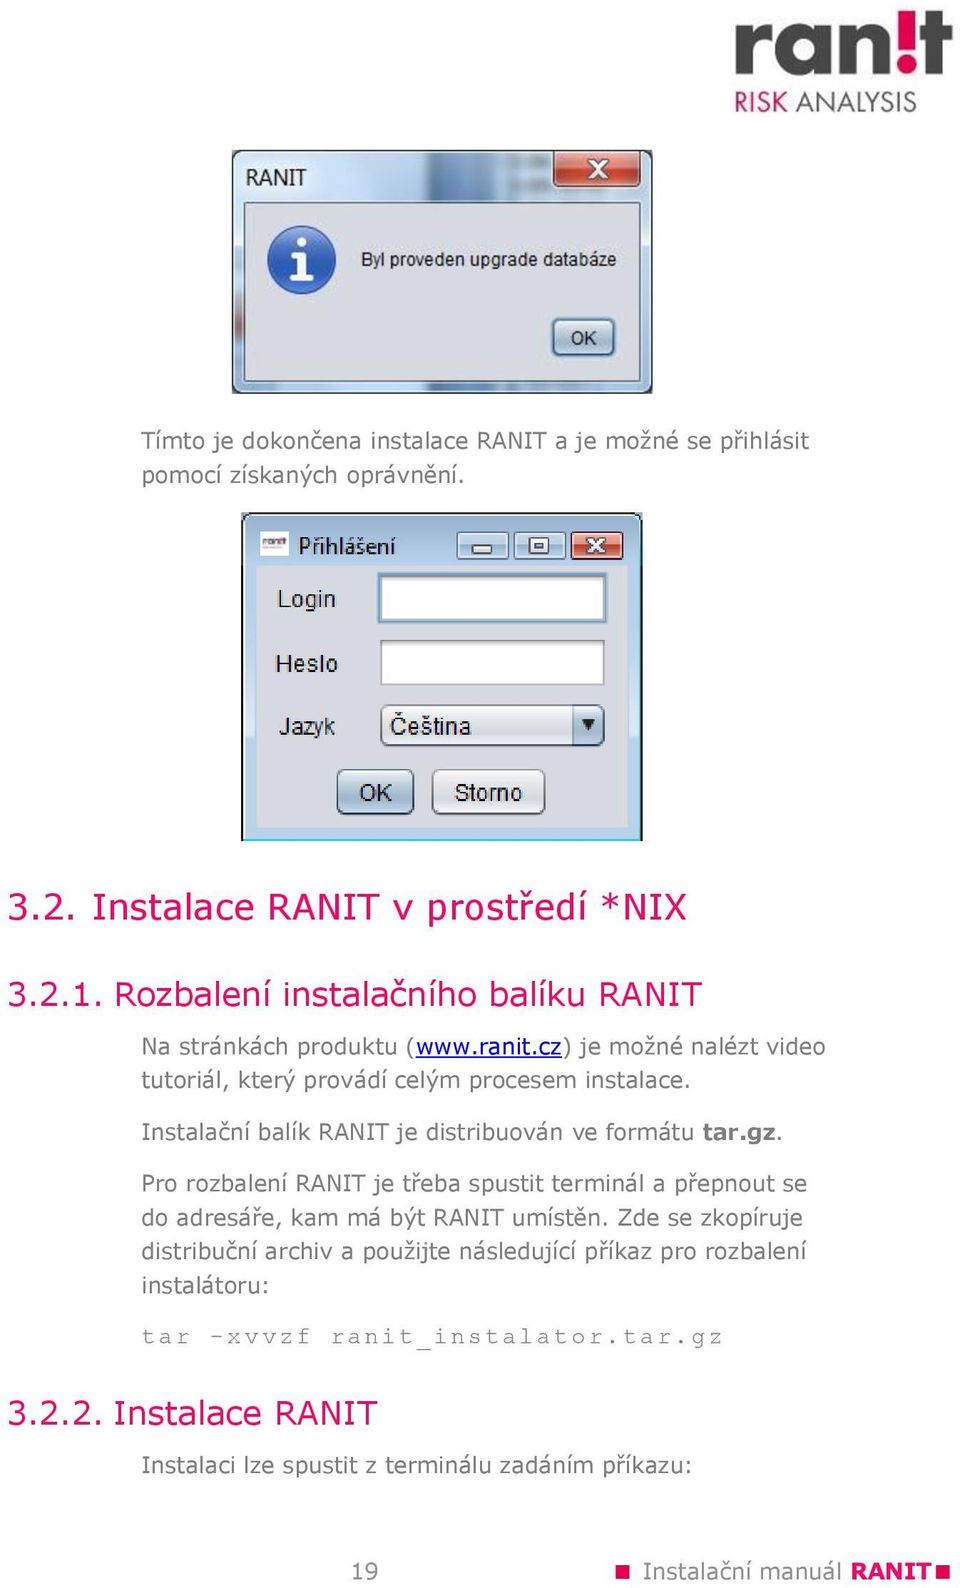 Instalační balík RANIT je distribuován ve formátu tar.gz. Pro rozbalení RANIT je třeba spustit terminál a přepnout se do adresáře, kam má být RANIT umístěn.